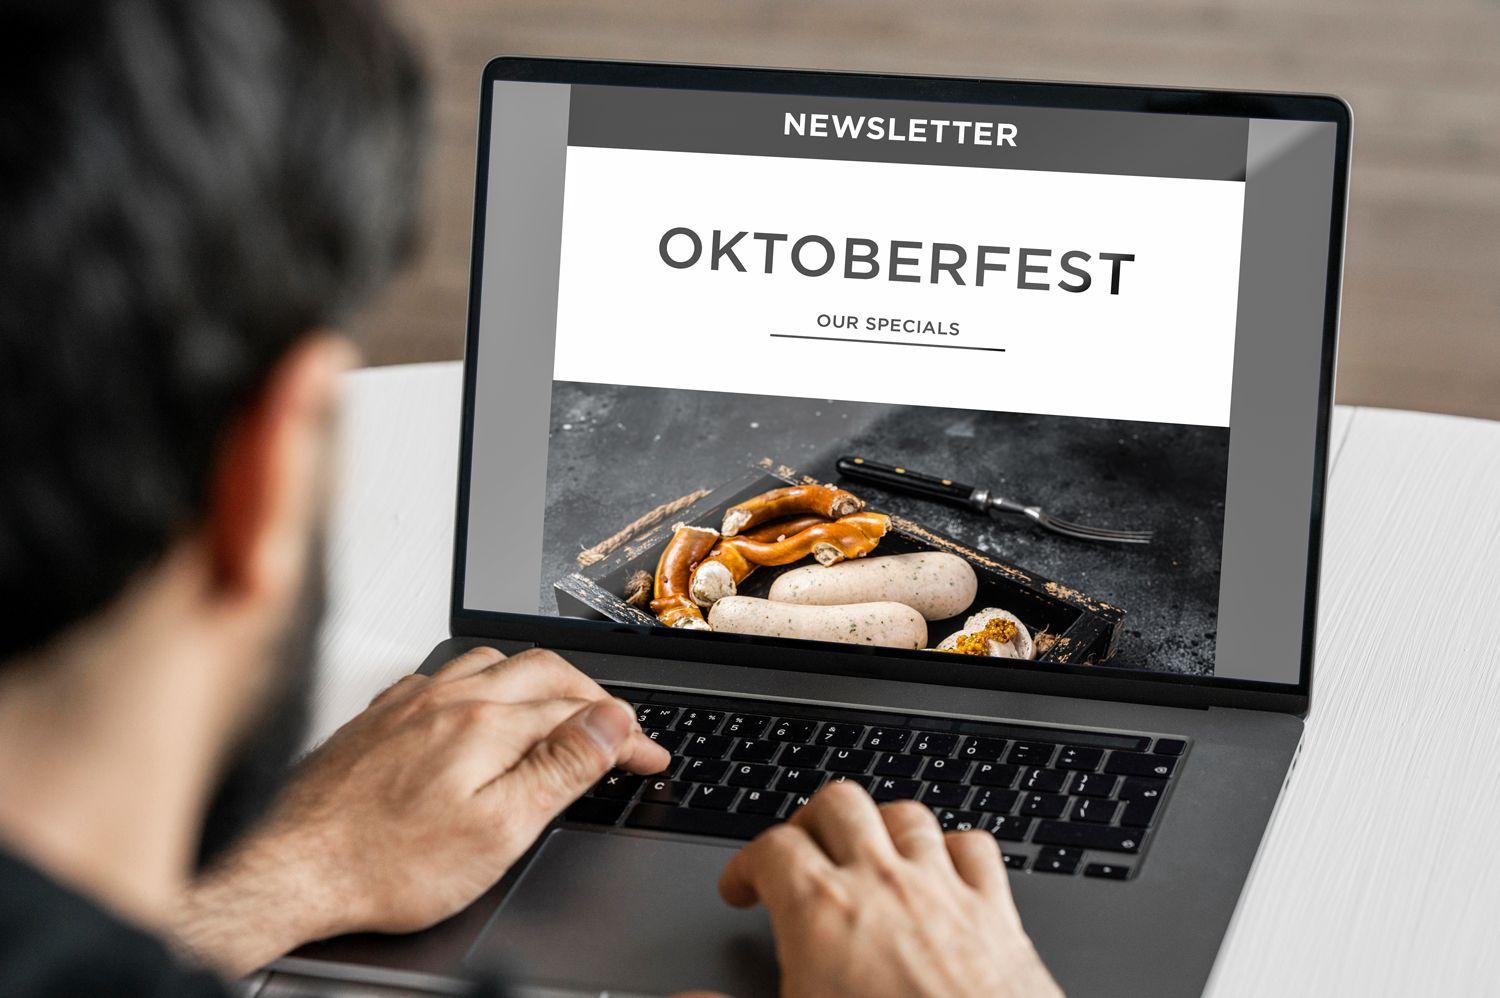 Oktoberfest mittels Newsletter ankündigen